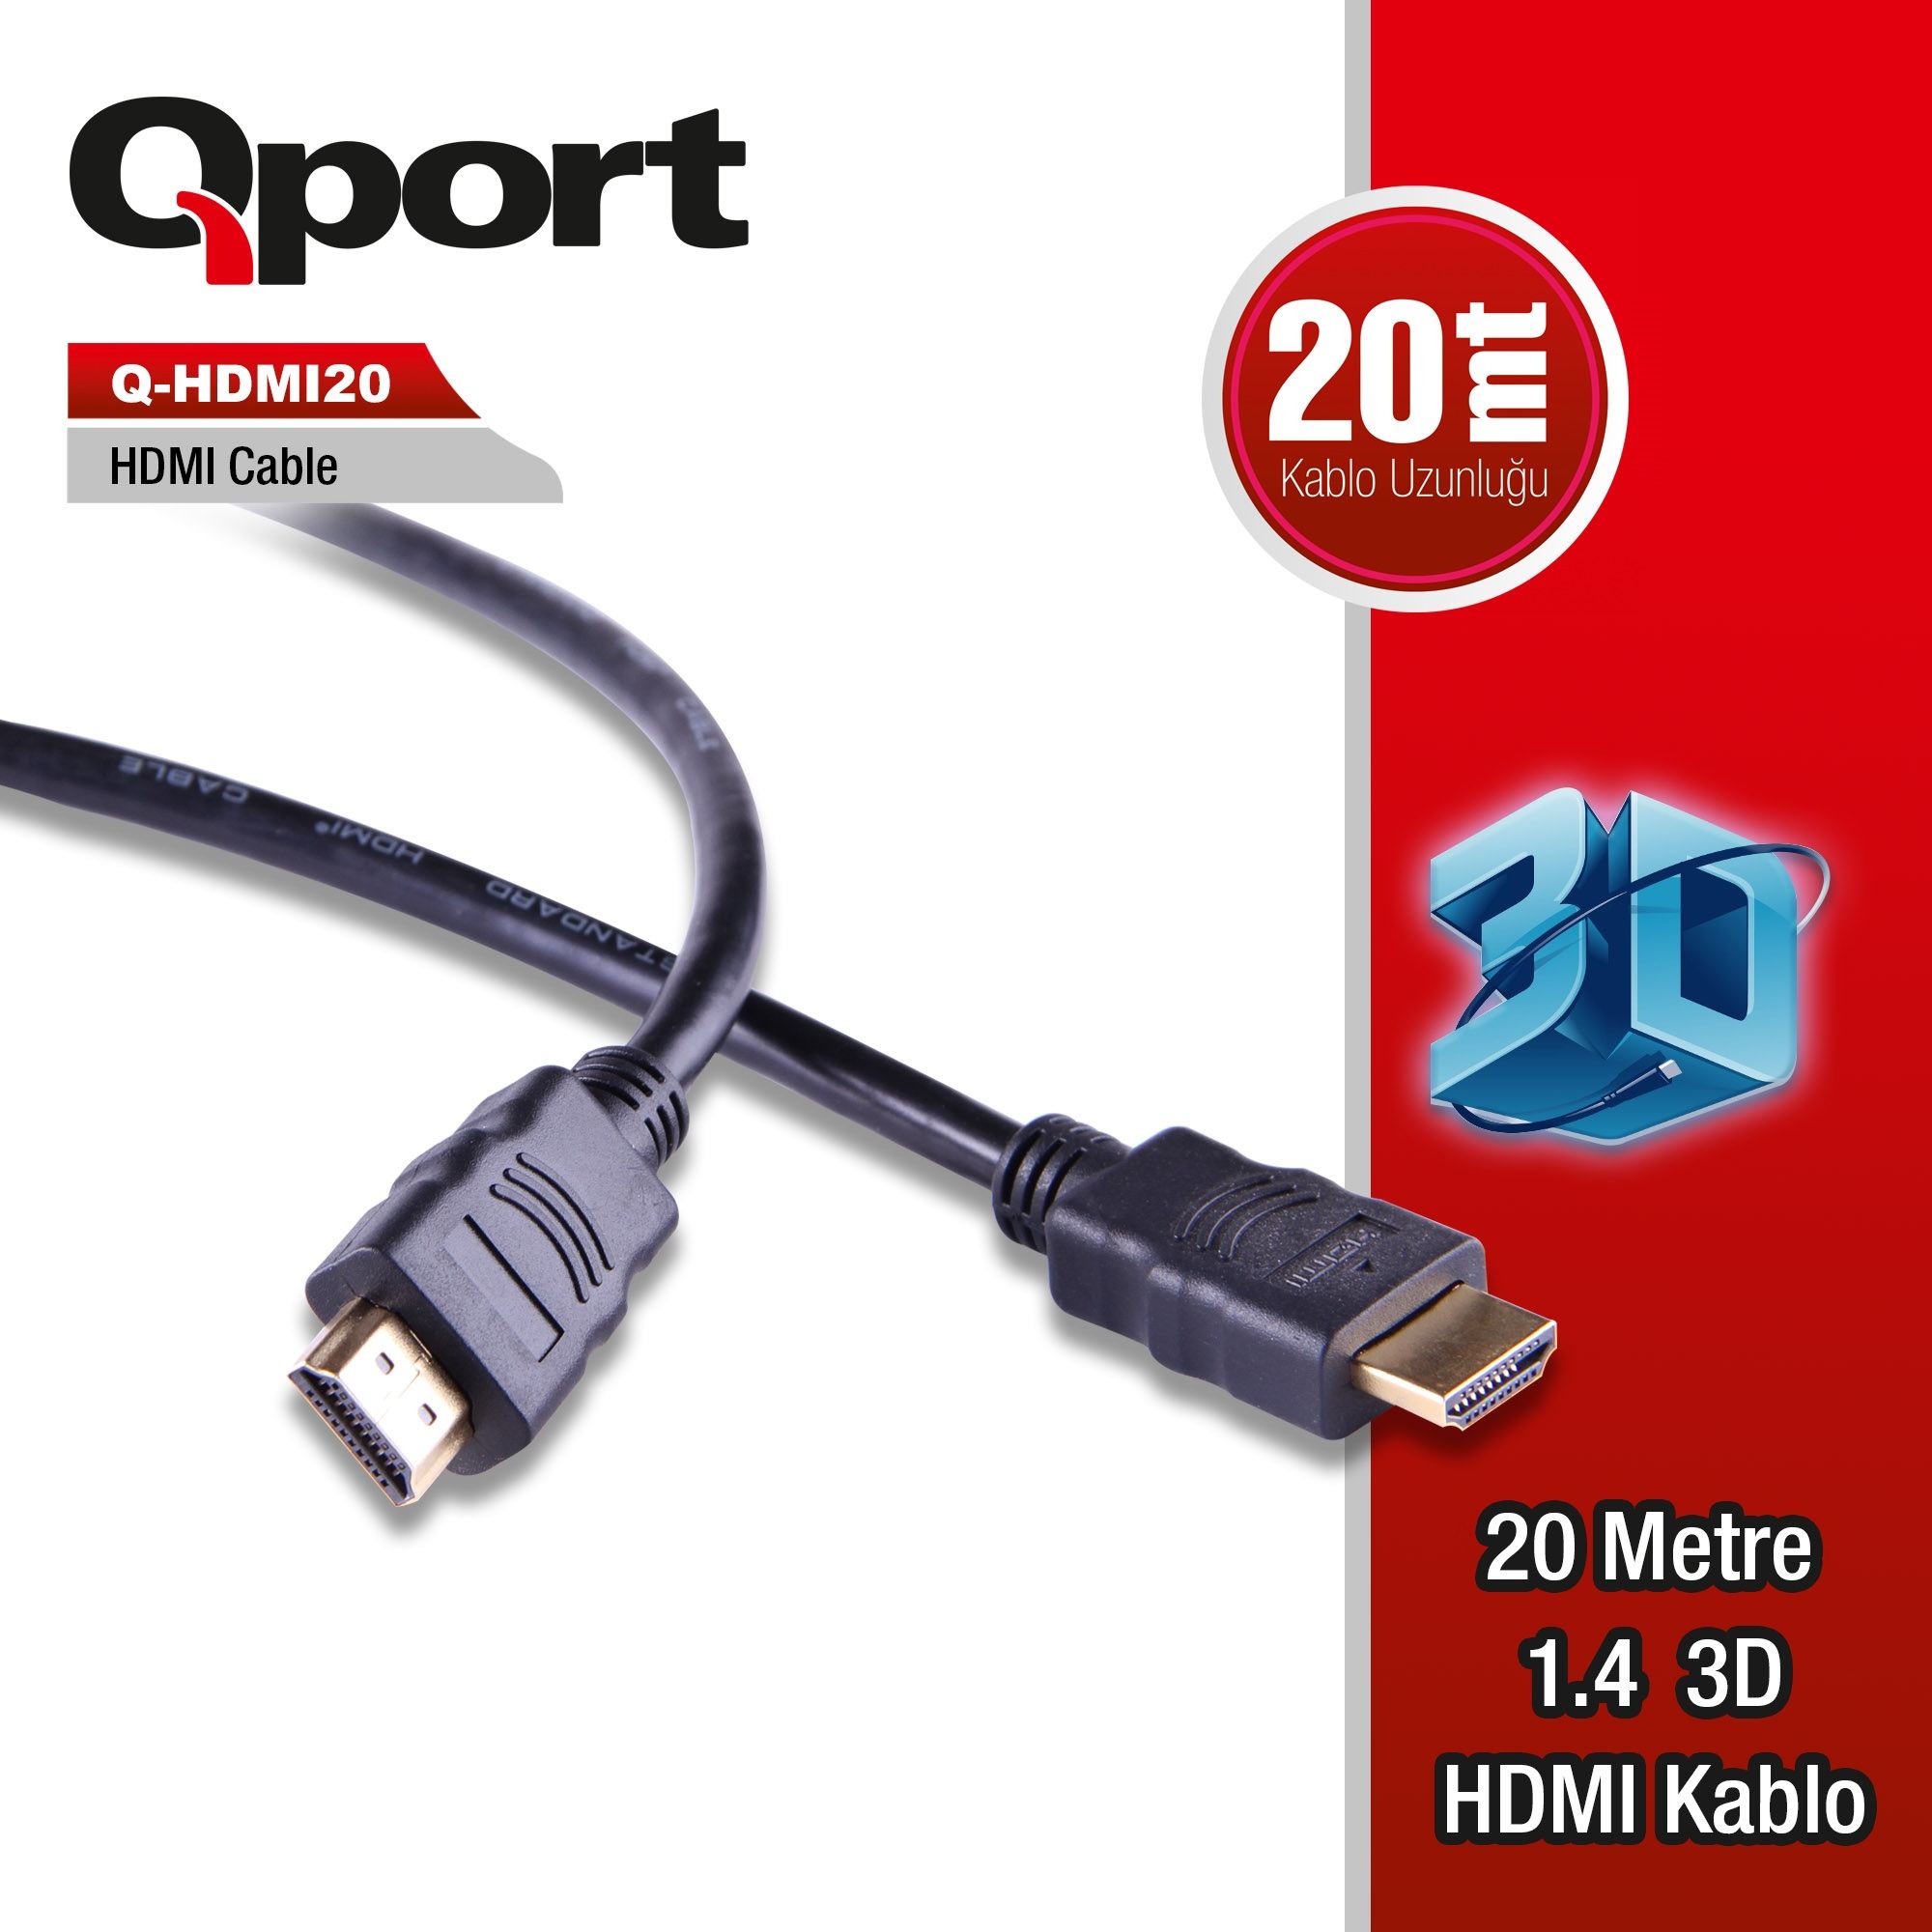 Qport%20Q-HDMI20%20Hdmi%20Kablo%2020MT%20Ver1.4%20Altin%20Uçlu%203D